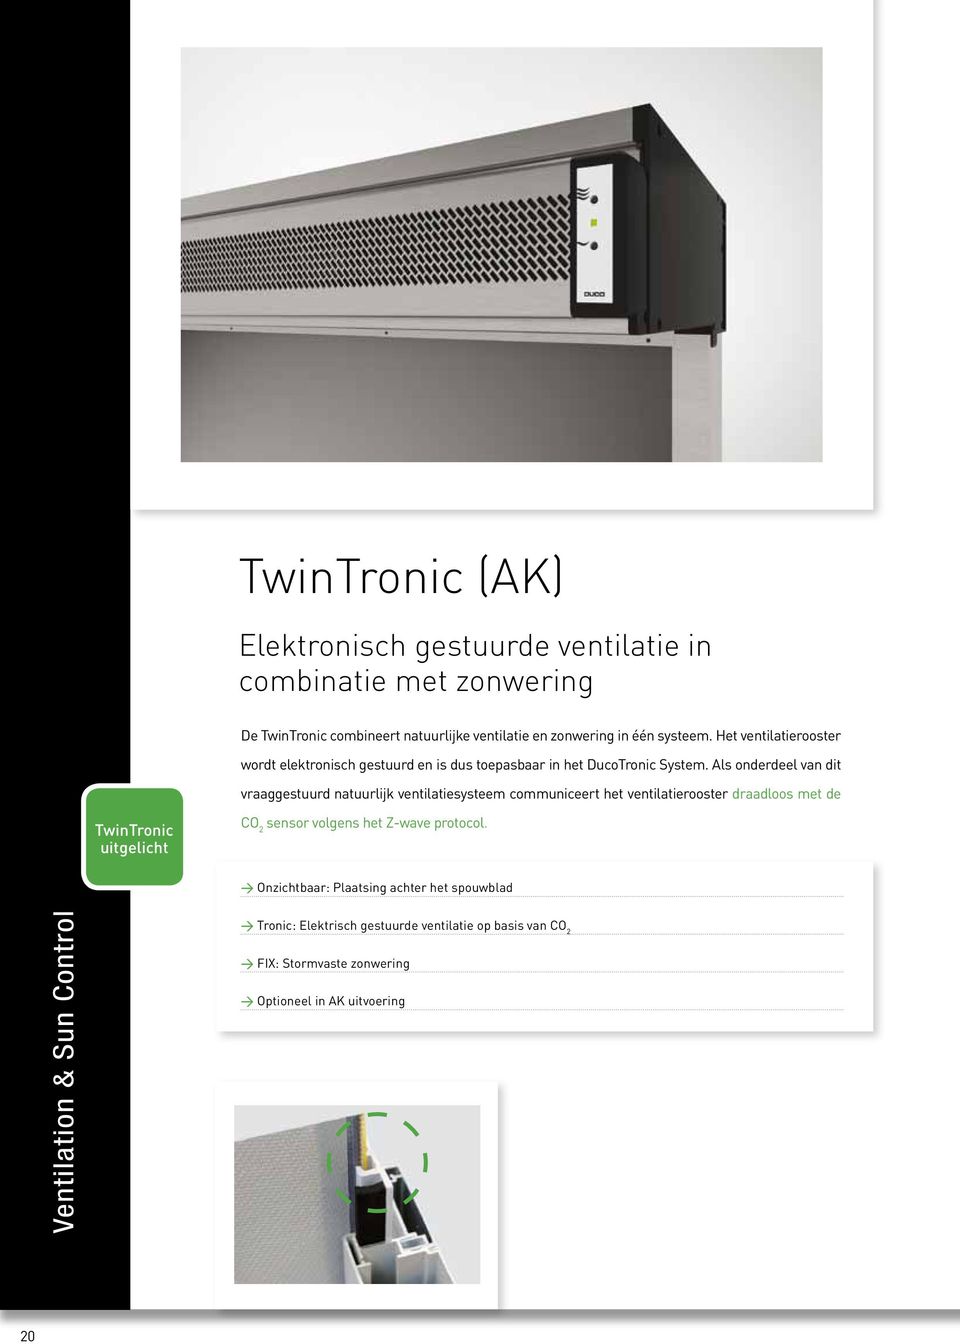 Als onderdeel van dit vraaggestuurd natuurlijk ventilatiesysteem communiceert het ventilatierooster draadloos met de TwinTronic uitgelicht CO 2